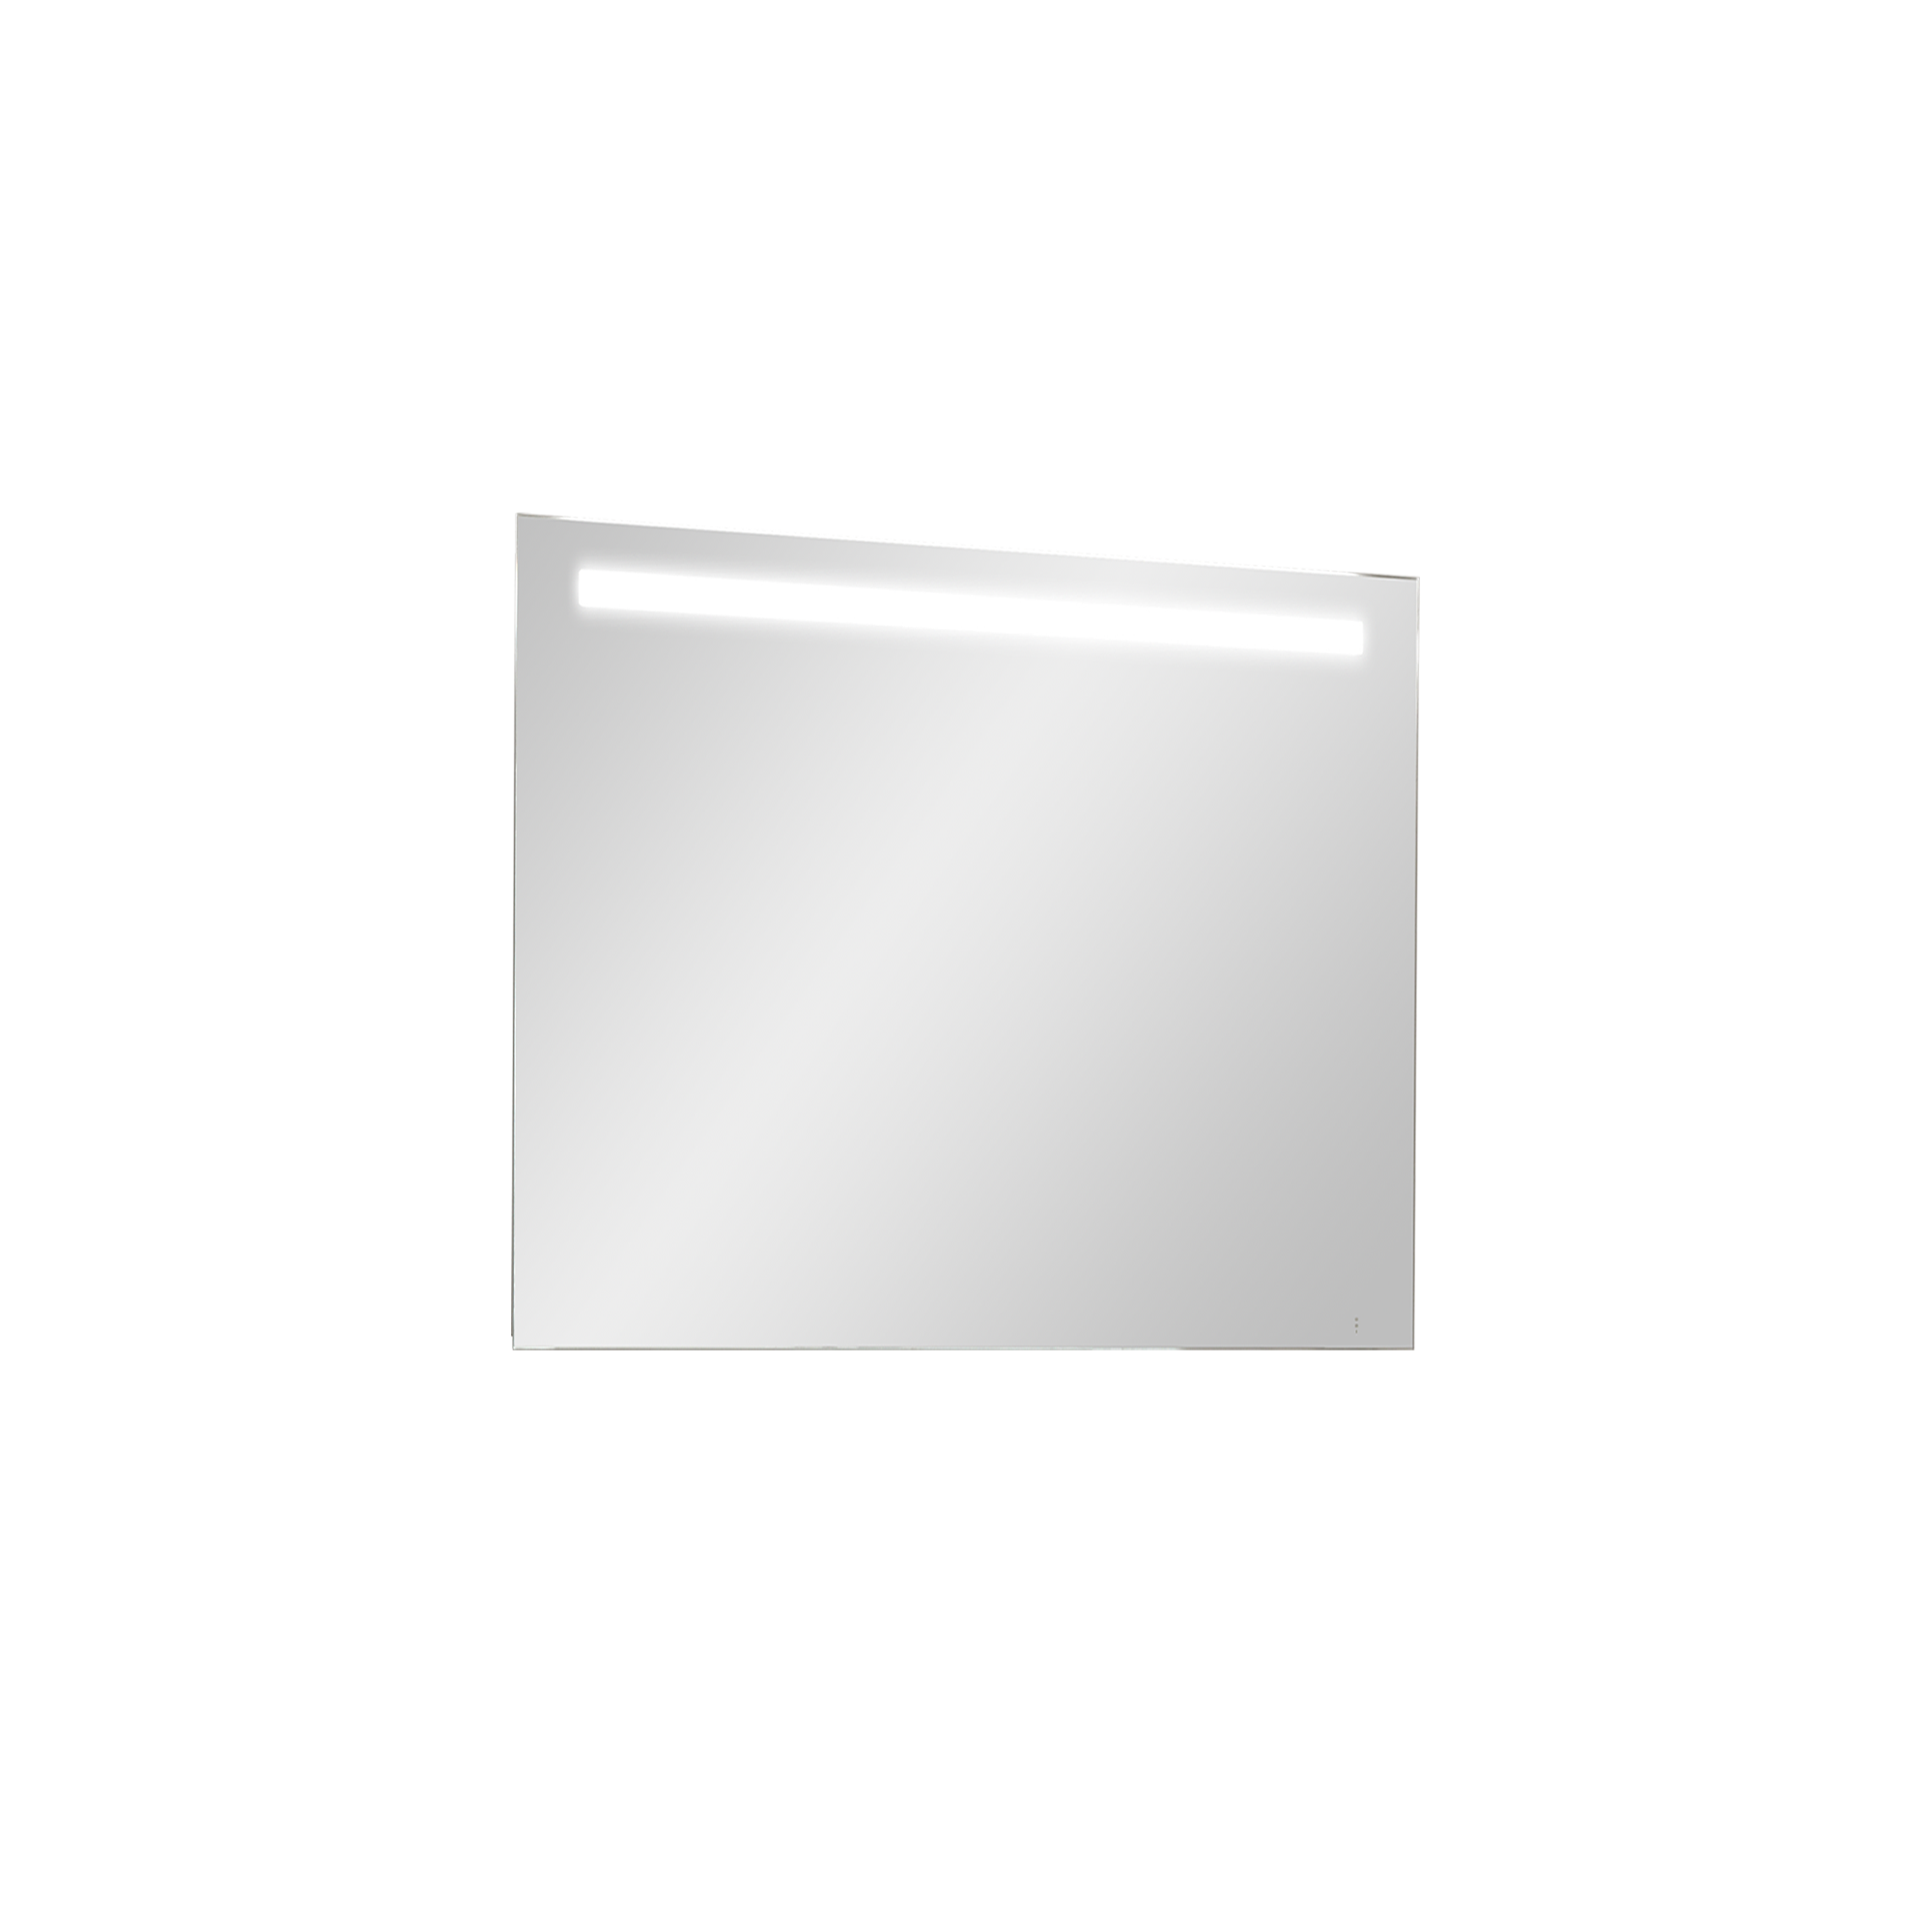 Storke Lucio rechthoekig badkamerspiegel 85 x 65 cm met spiegelverlichting en -verwarming